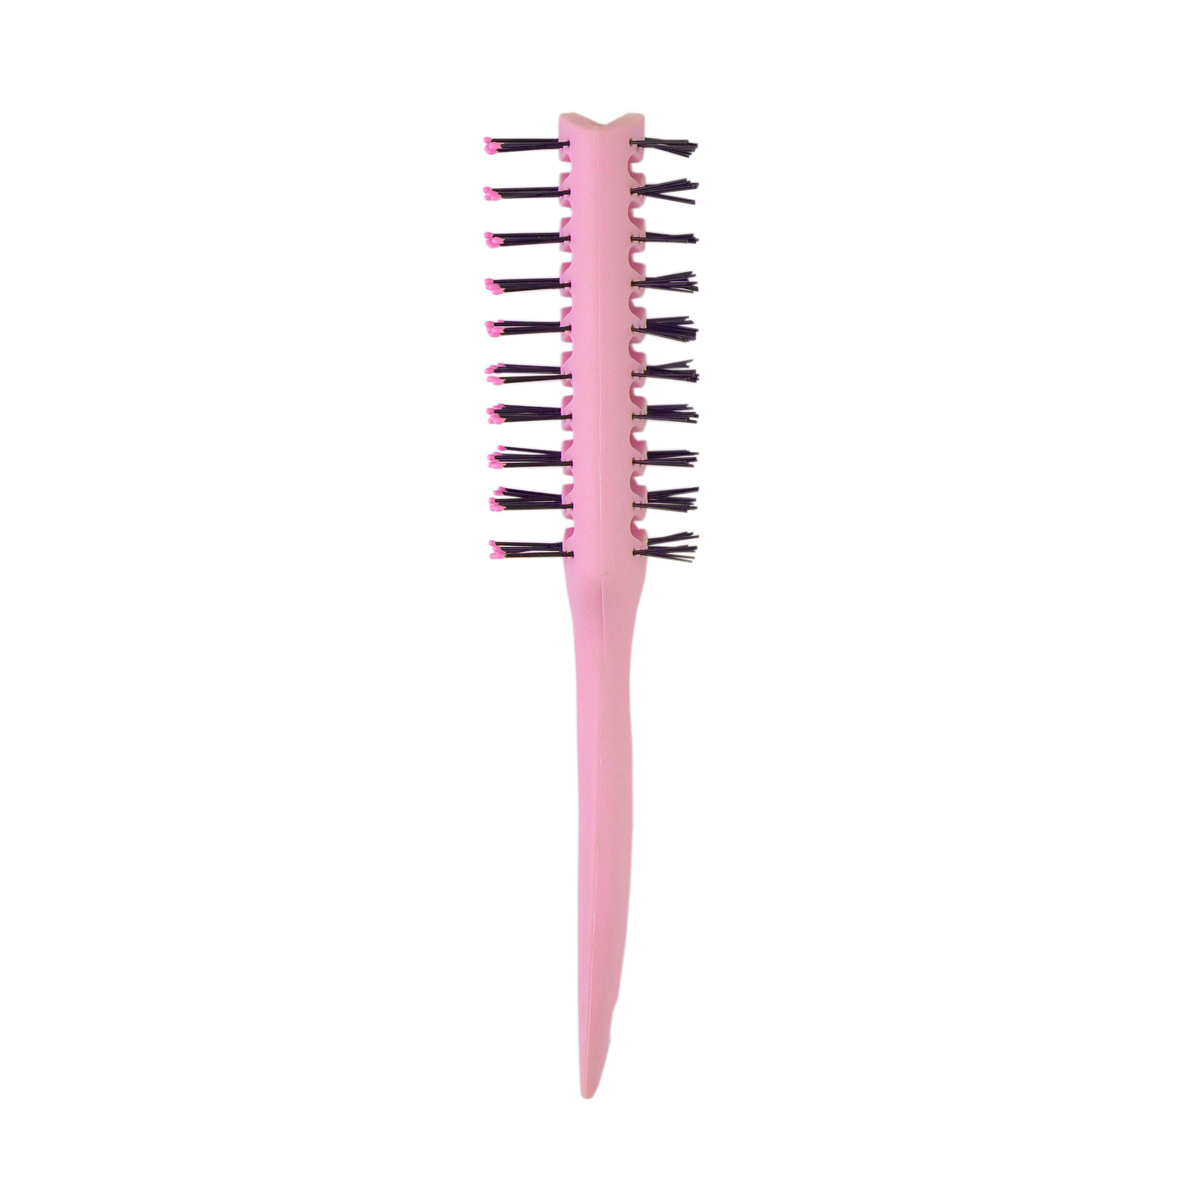 Расчёска вентиляционная LEI 170 розовая расческа грабли